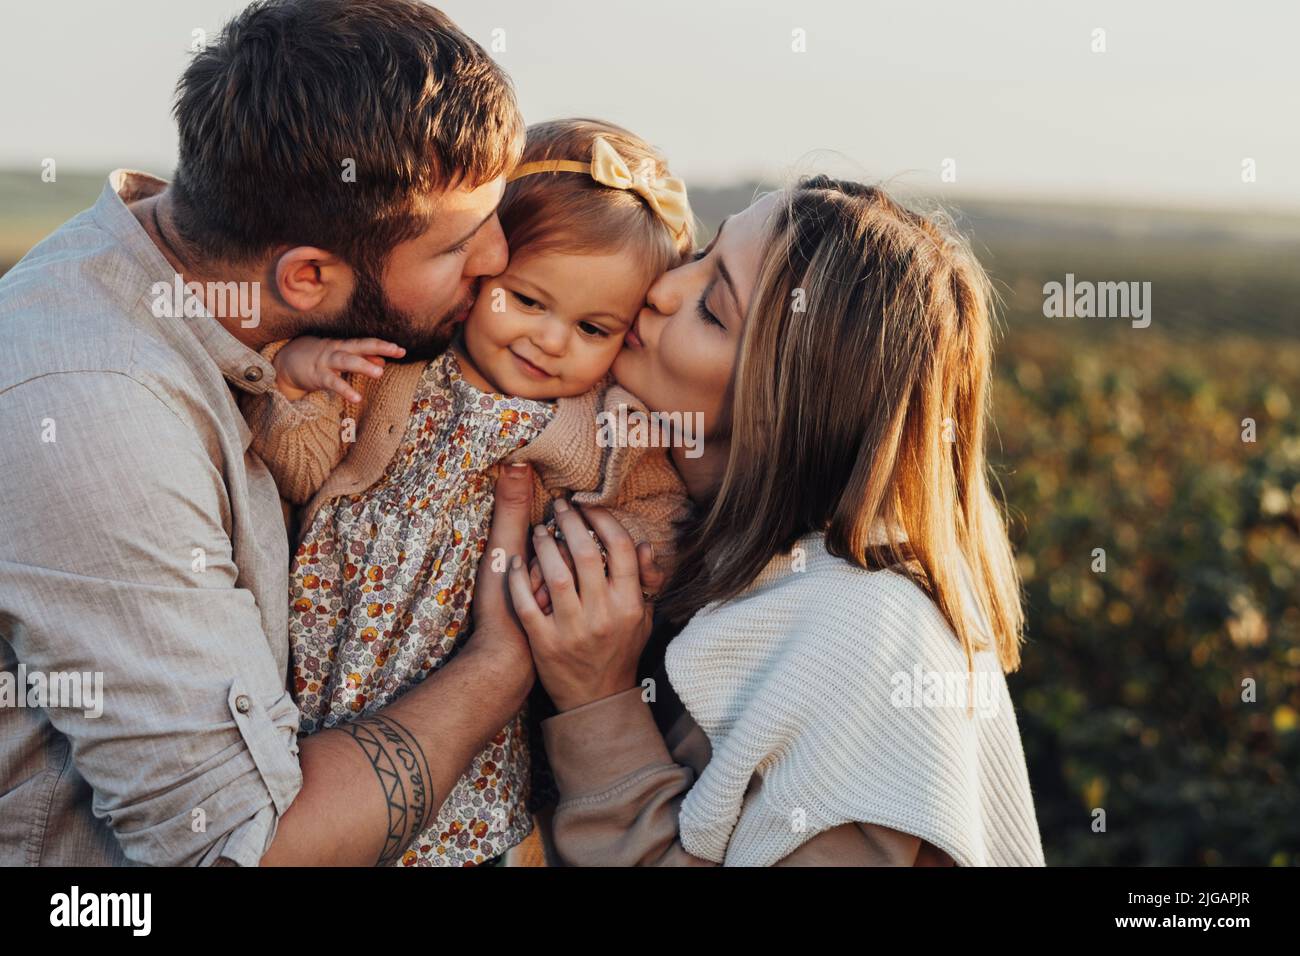 Nahaufnahme Porträt einer glücklichen jungen kaukasischen Familie im Freien, Mutter und Vater küssen ihre kleine Tochter bei Sonnenuntergang Stockfoto